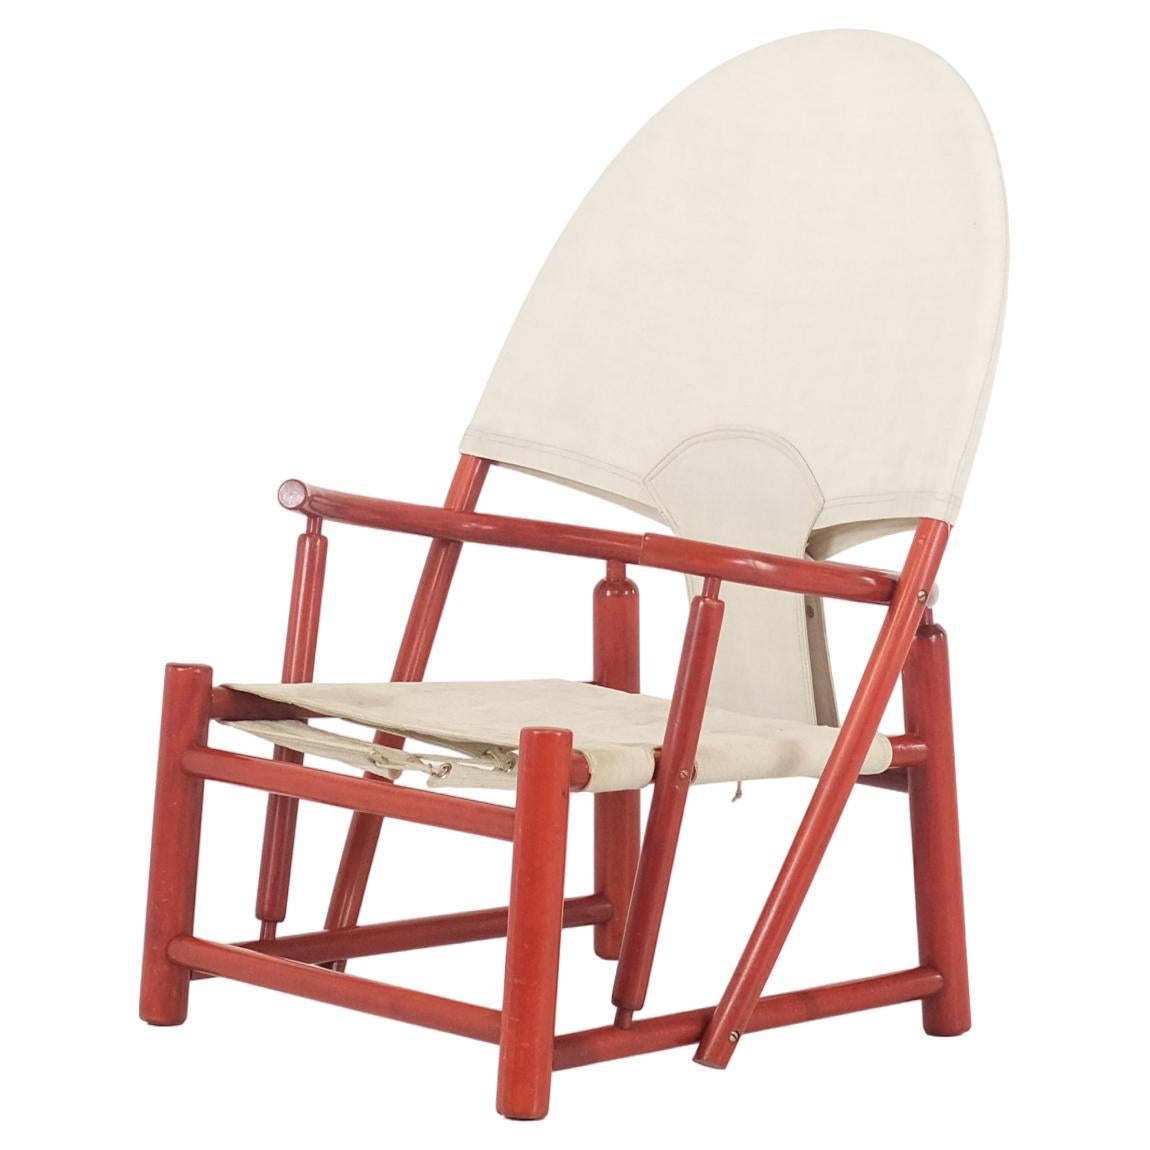 Hoop Chair von Piero Palange & Werther Toffoloni für Germa - 1970er Jahre